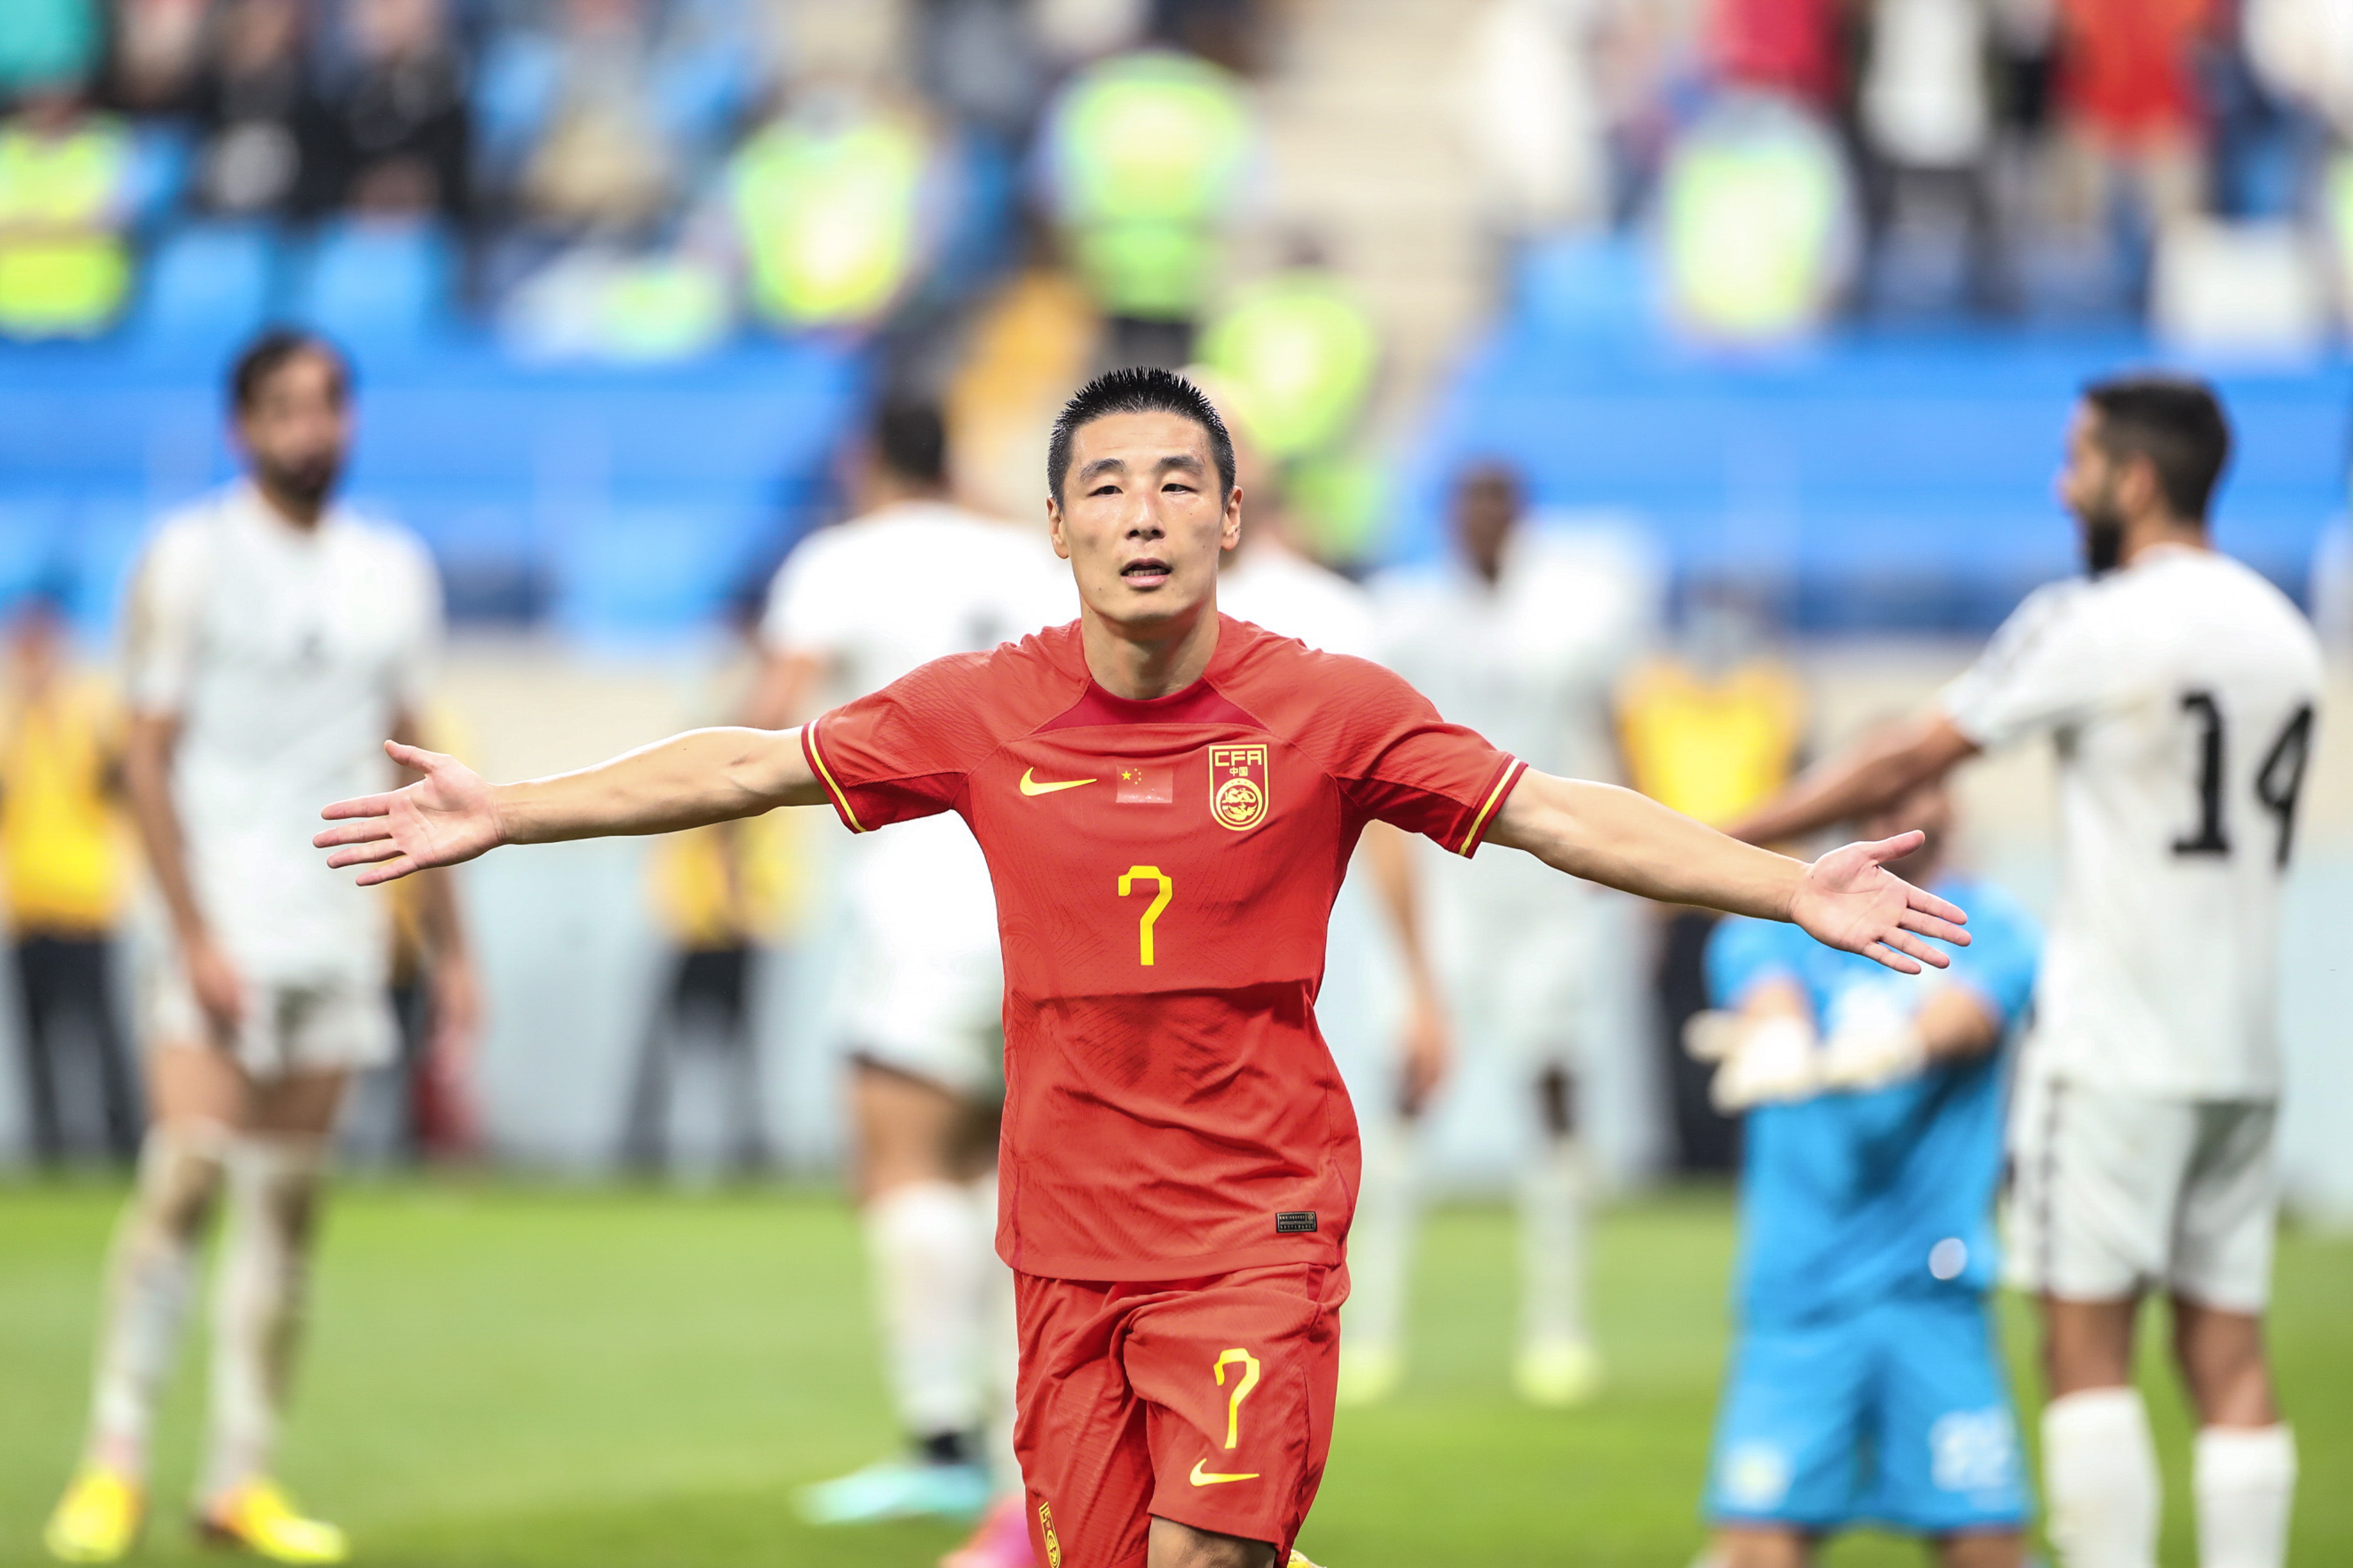 6月20日,中国队球员武磊在比赛中庆祝进球新华社发